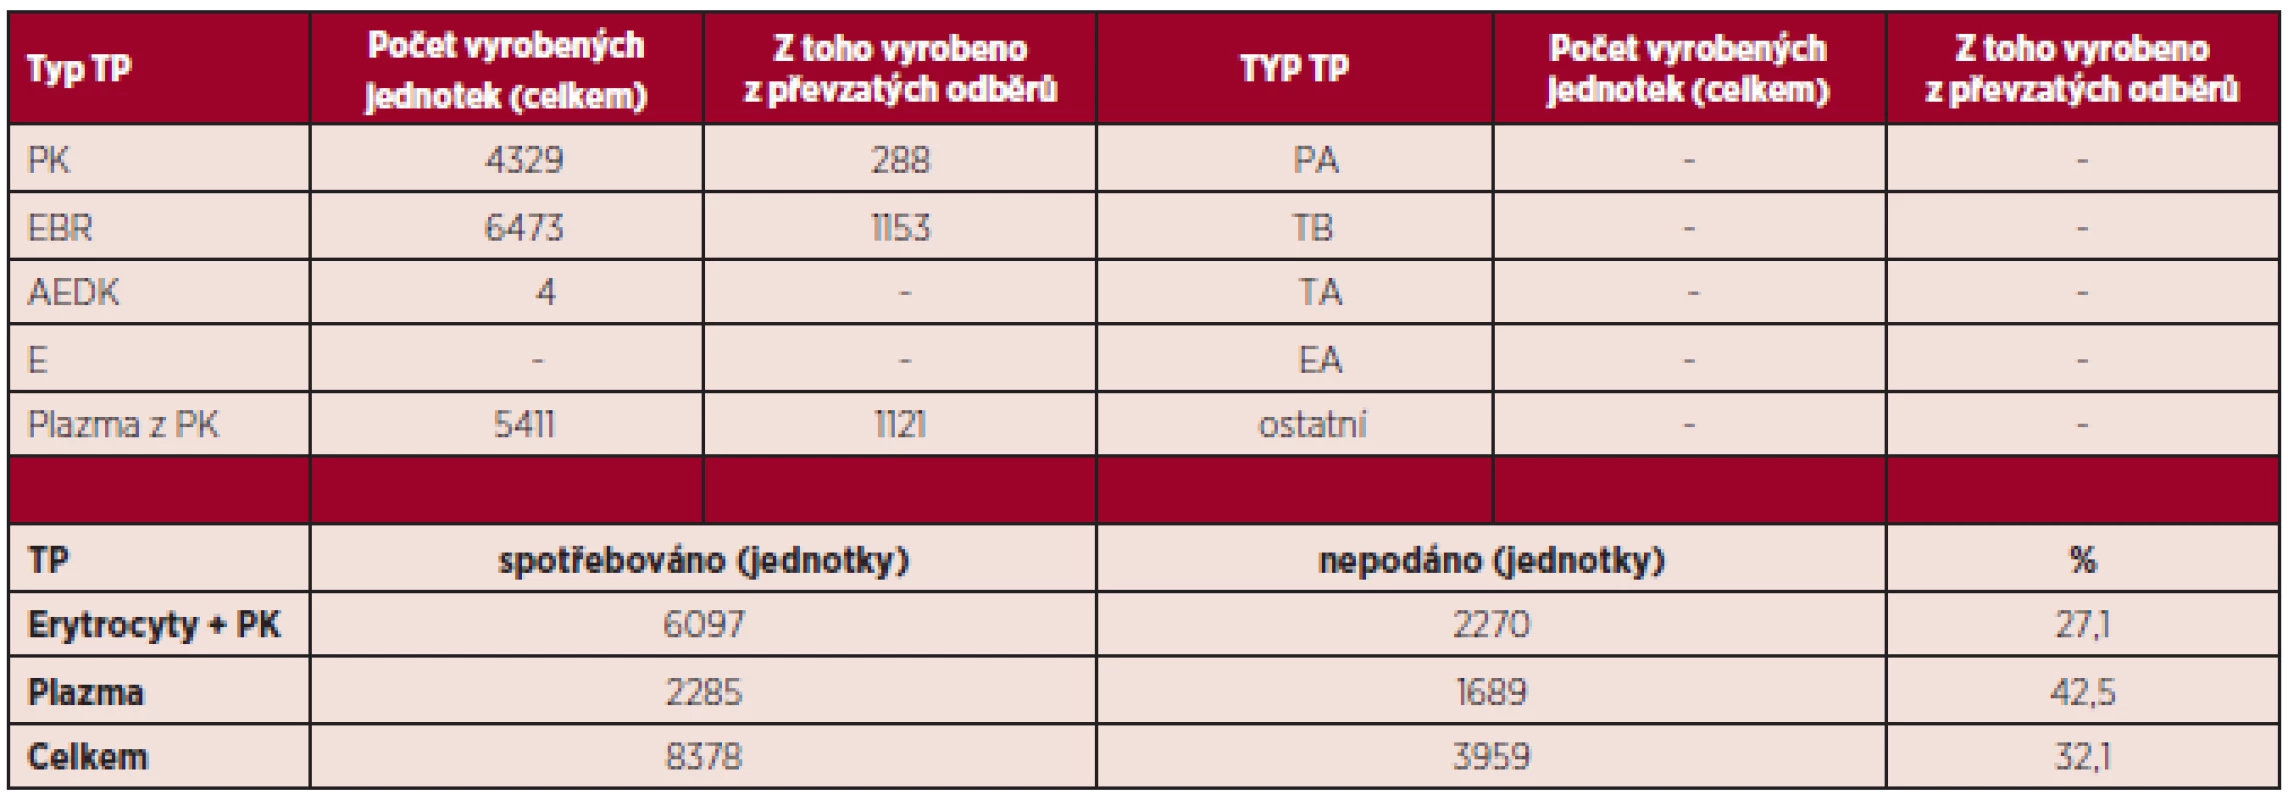 Autotransfuze v České republice v roce 2013 – transfuzní přípravky.